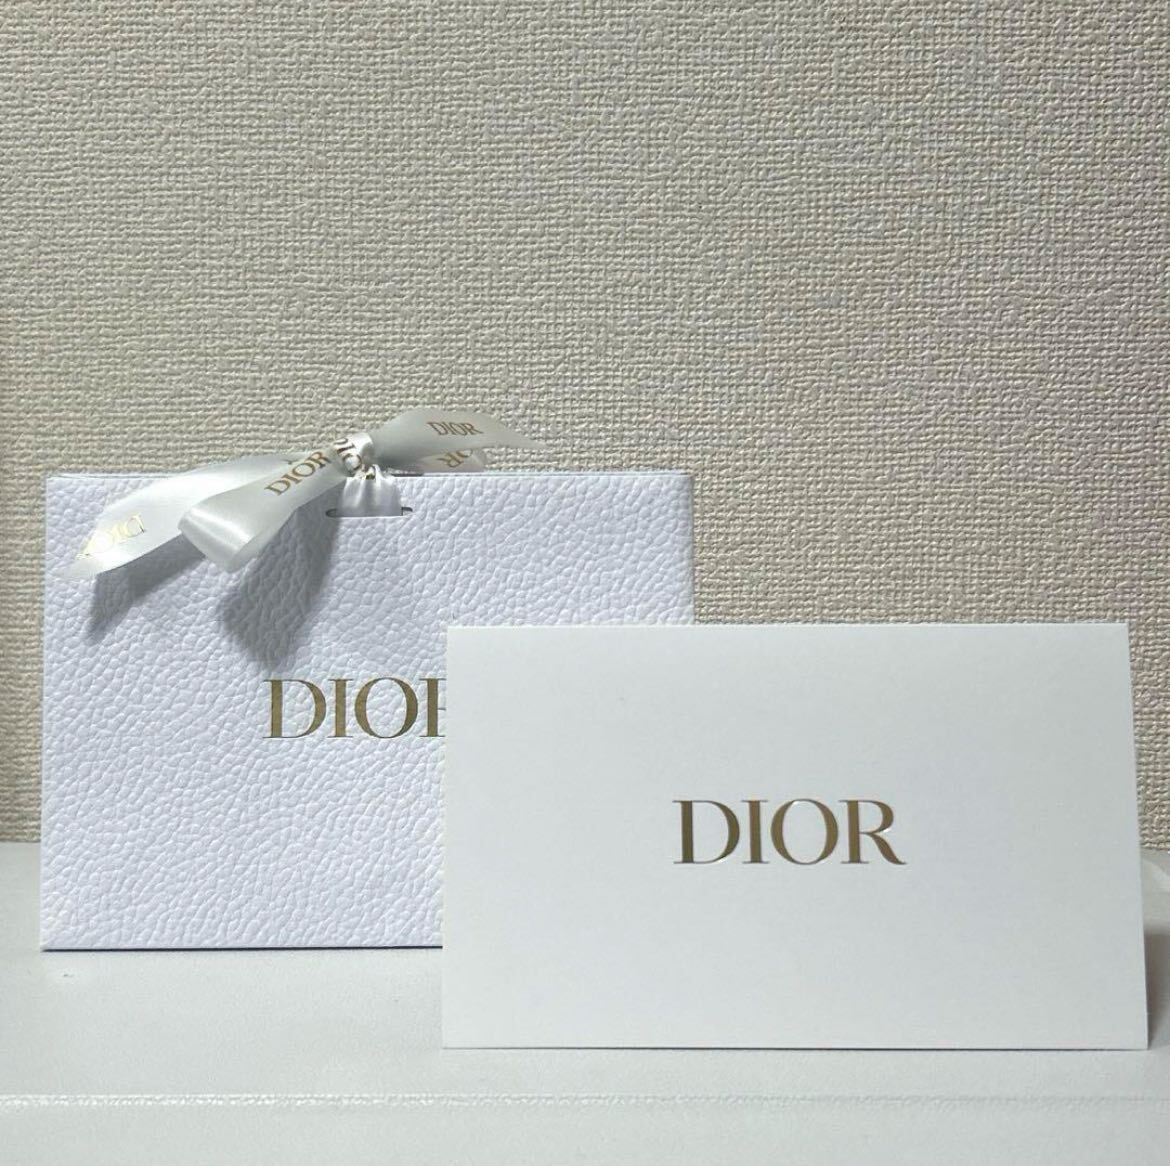  новый товар Dior Dior подарок упаковка для box подарок tepakos косметика черный розовый BLACKPINKjisjisoo